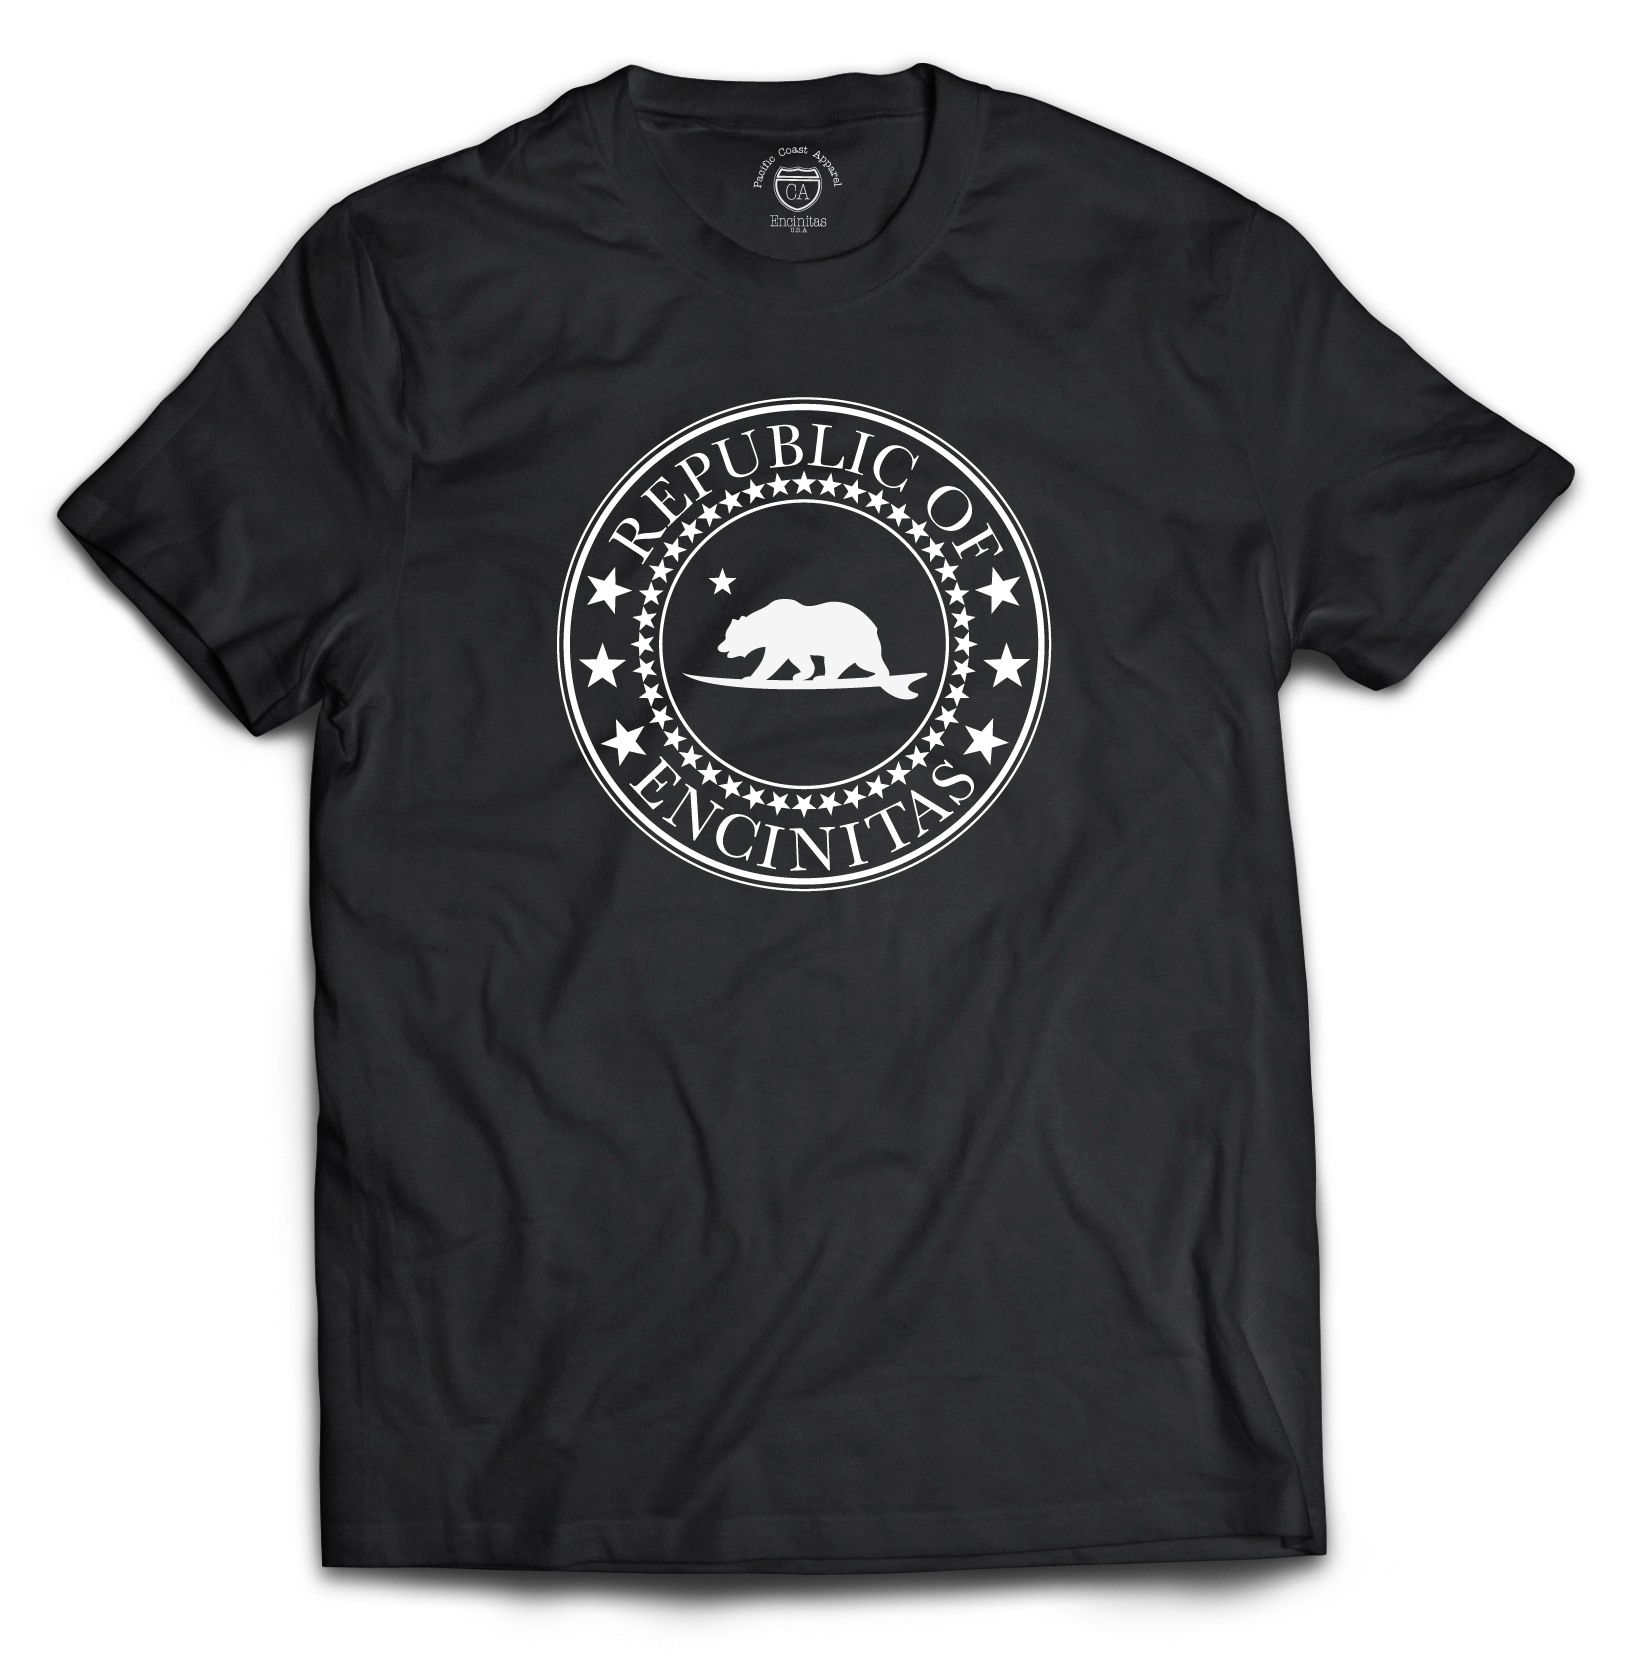 California Surfing Ocean Beach T Shirts-CL – Colamaga